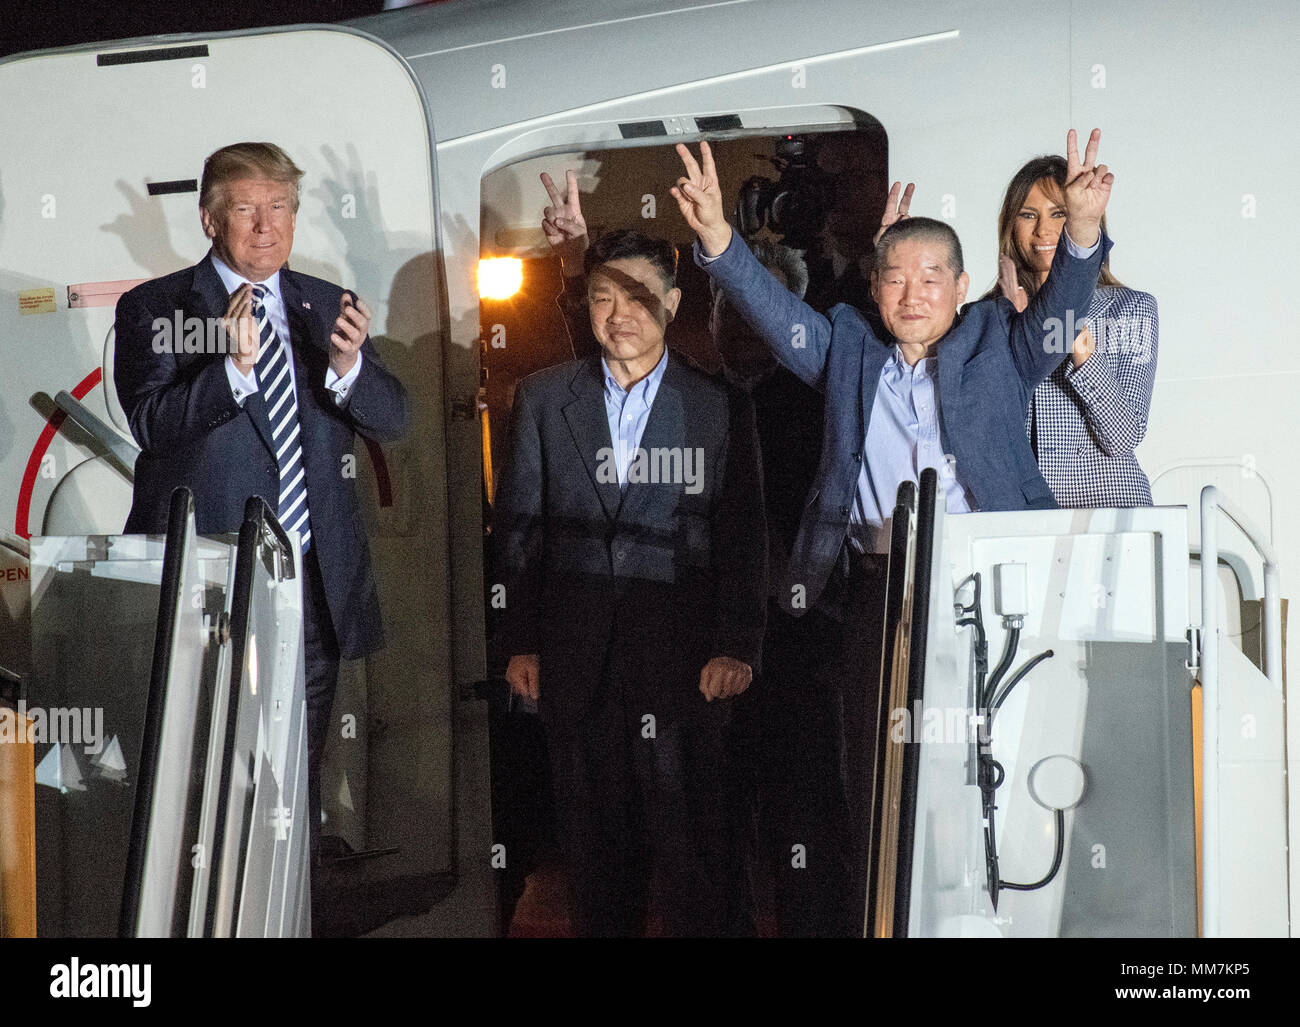 El Presidente de Estados Unidos, Donald J. Trump celebra Kim Dong Chul Kim Hak Canción y Tony Kim de vuelta a los Estados Unidos en la base conjunta Andrews en Maryland el jueves, 10 de mayo de 2018. Los tres hombres fueron encarcelados en Corea del Norte por períodos que oscilan entre uno y dos años. Fueron liberados a la Secretaria de Estado de EEUU Mike Pompeo como un gesto de buena voluntad en los prolegómenos de las conversaciones entre el Presidente Trump y el líder norcoreano Kim Jong-nu. Crédito: Ron Sachs/CNP /MediaPunch Foto de stock